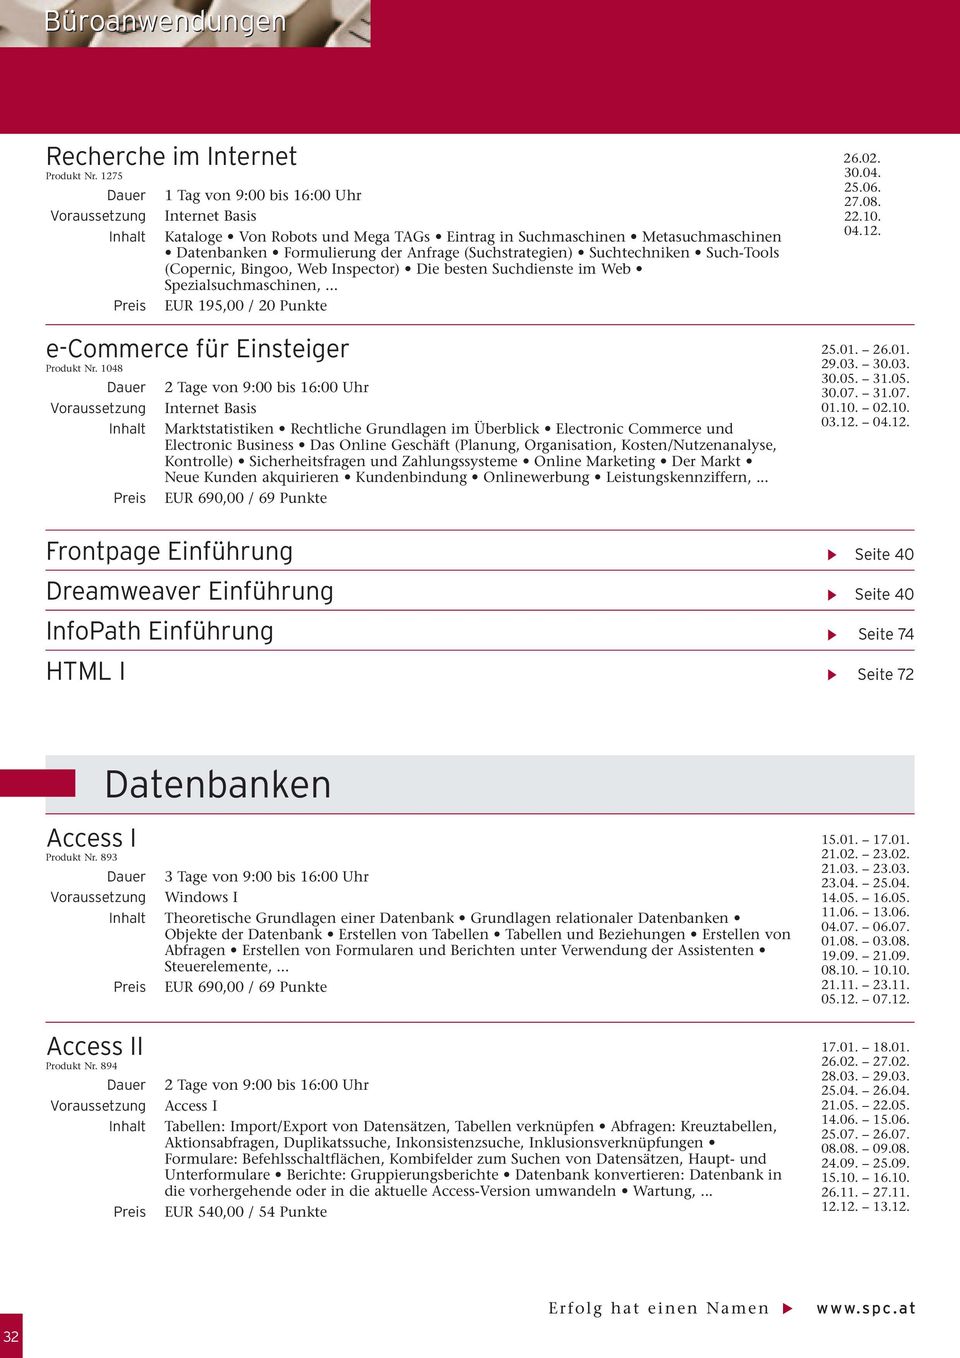 nspector) Die besten Suchdienste im Web Spezialsuchmaschinen,... EUR 195,00 / 20 Punkte e-commerce für Einsteiger Produkt Nr.